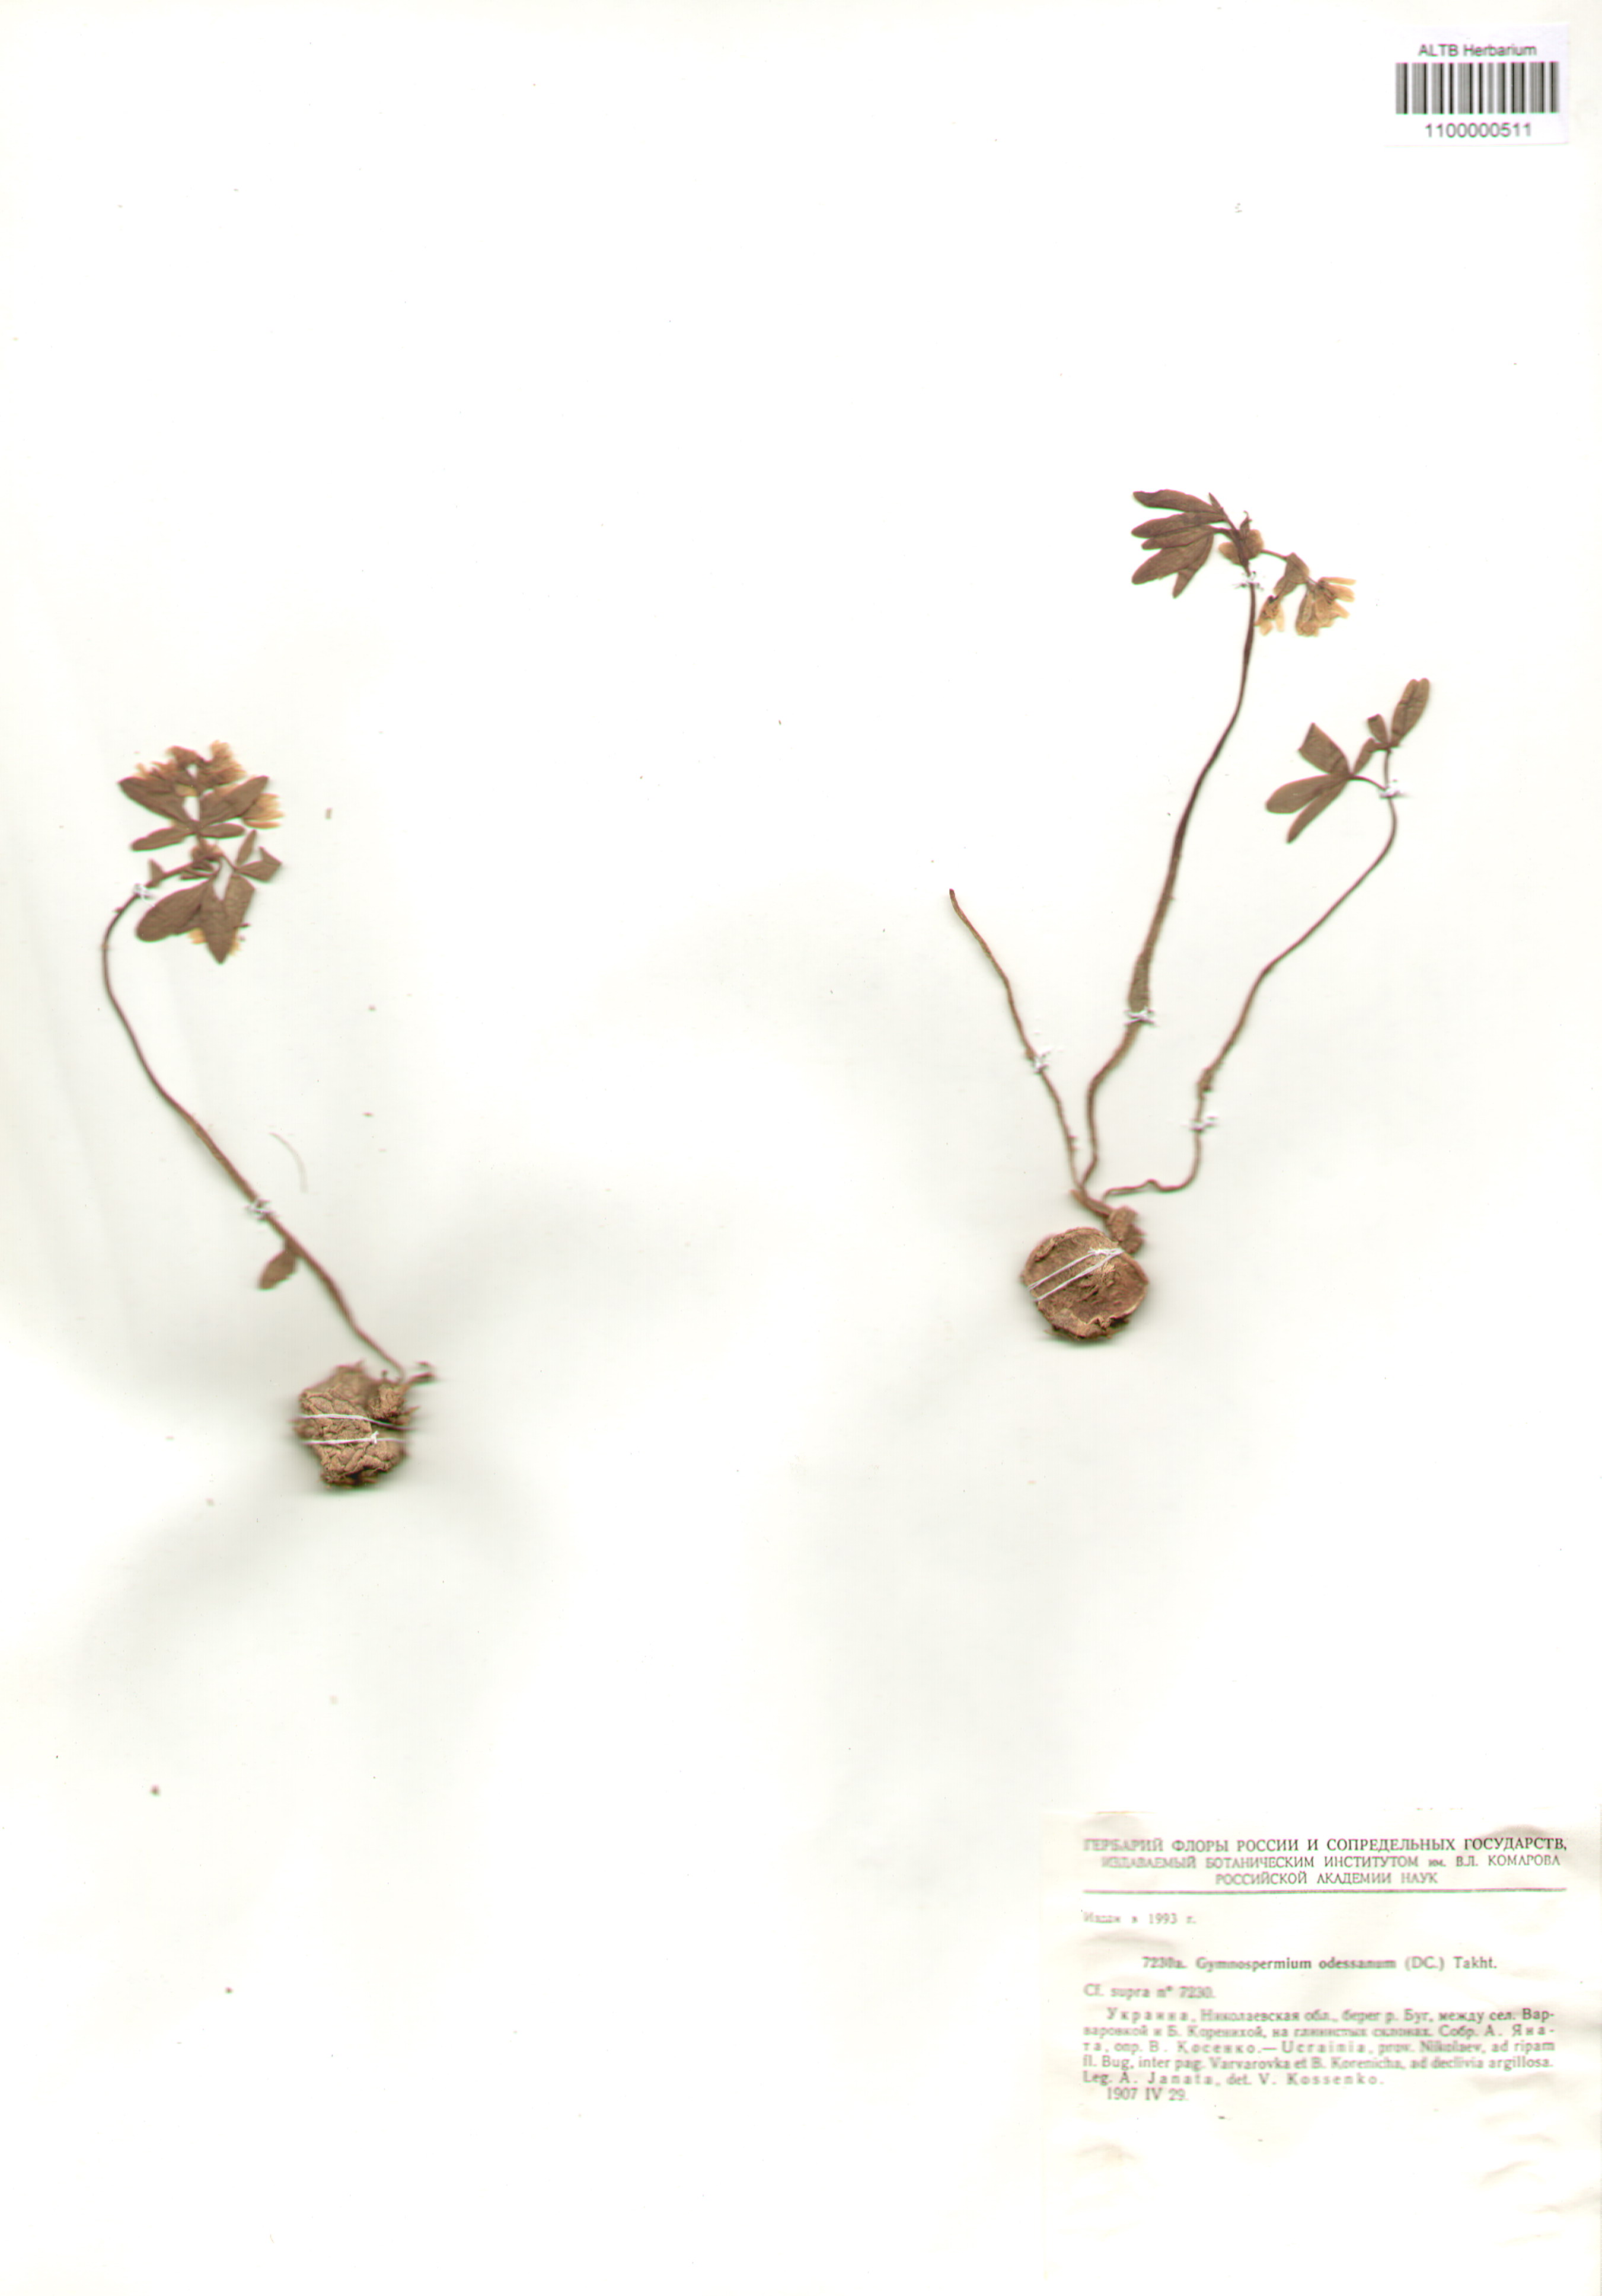 Berberidaceae,Gymnospermium odessanum (DC.) Takht.